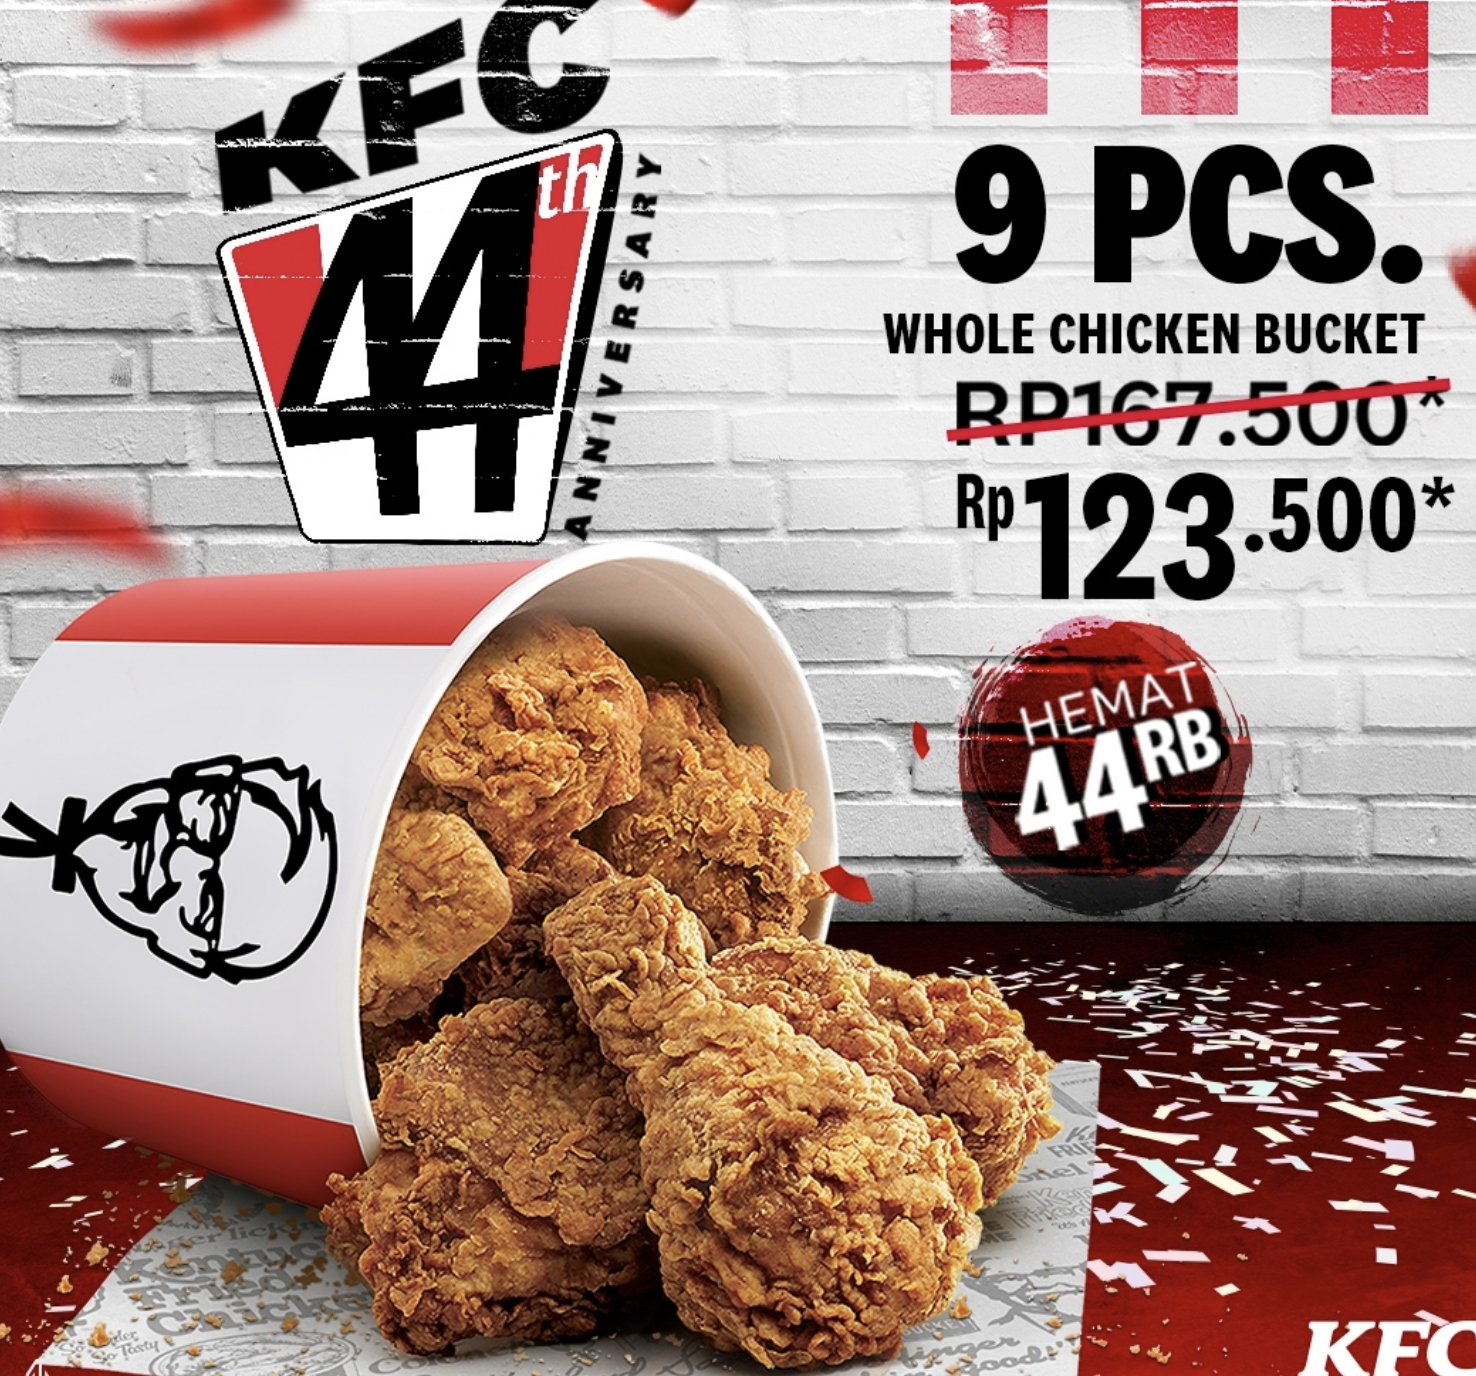 Ulang Tahun KFC 44: Hemat 44 Ribu Beli Whole Chicken Bucket